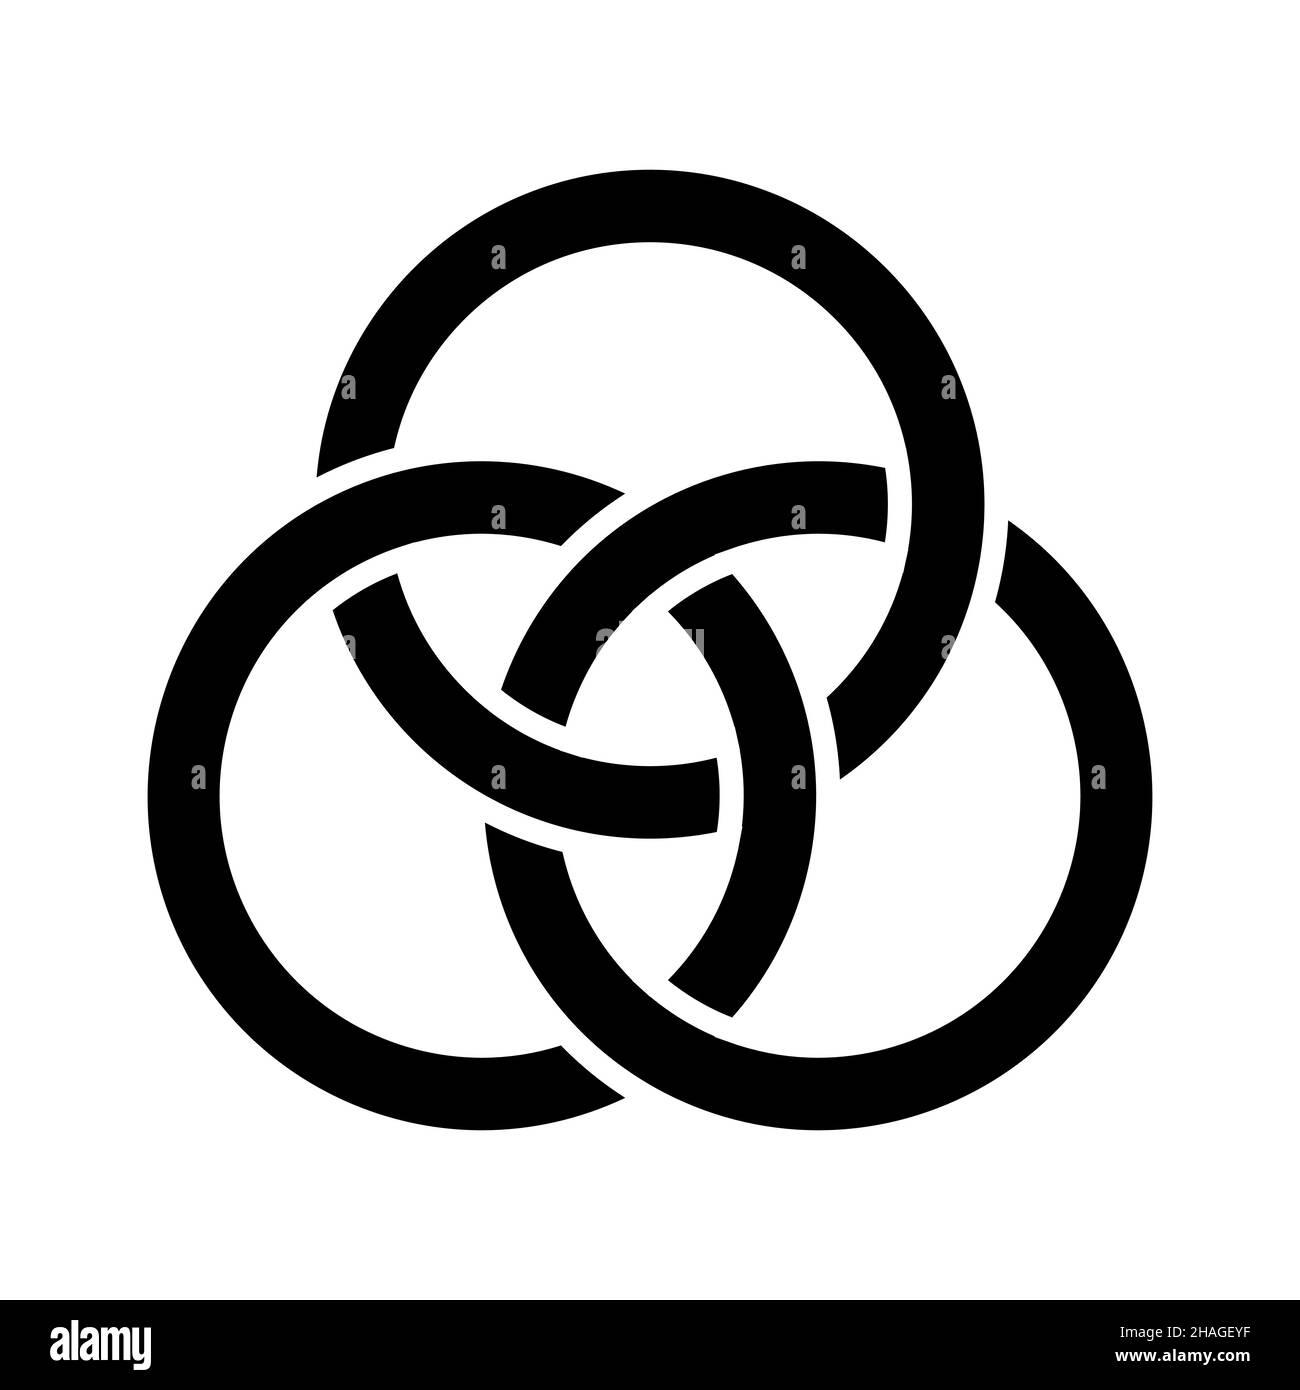 Cercle interconnecté, concept de logo, illustration vectorielle de trois anneaux connectés Illustration de Vecteur